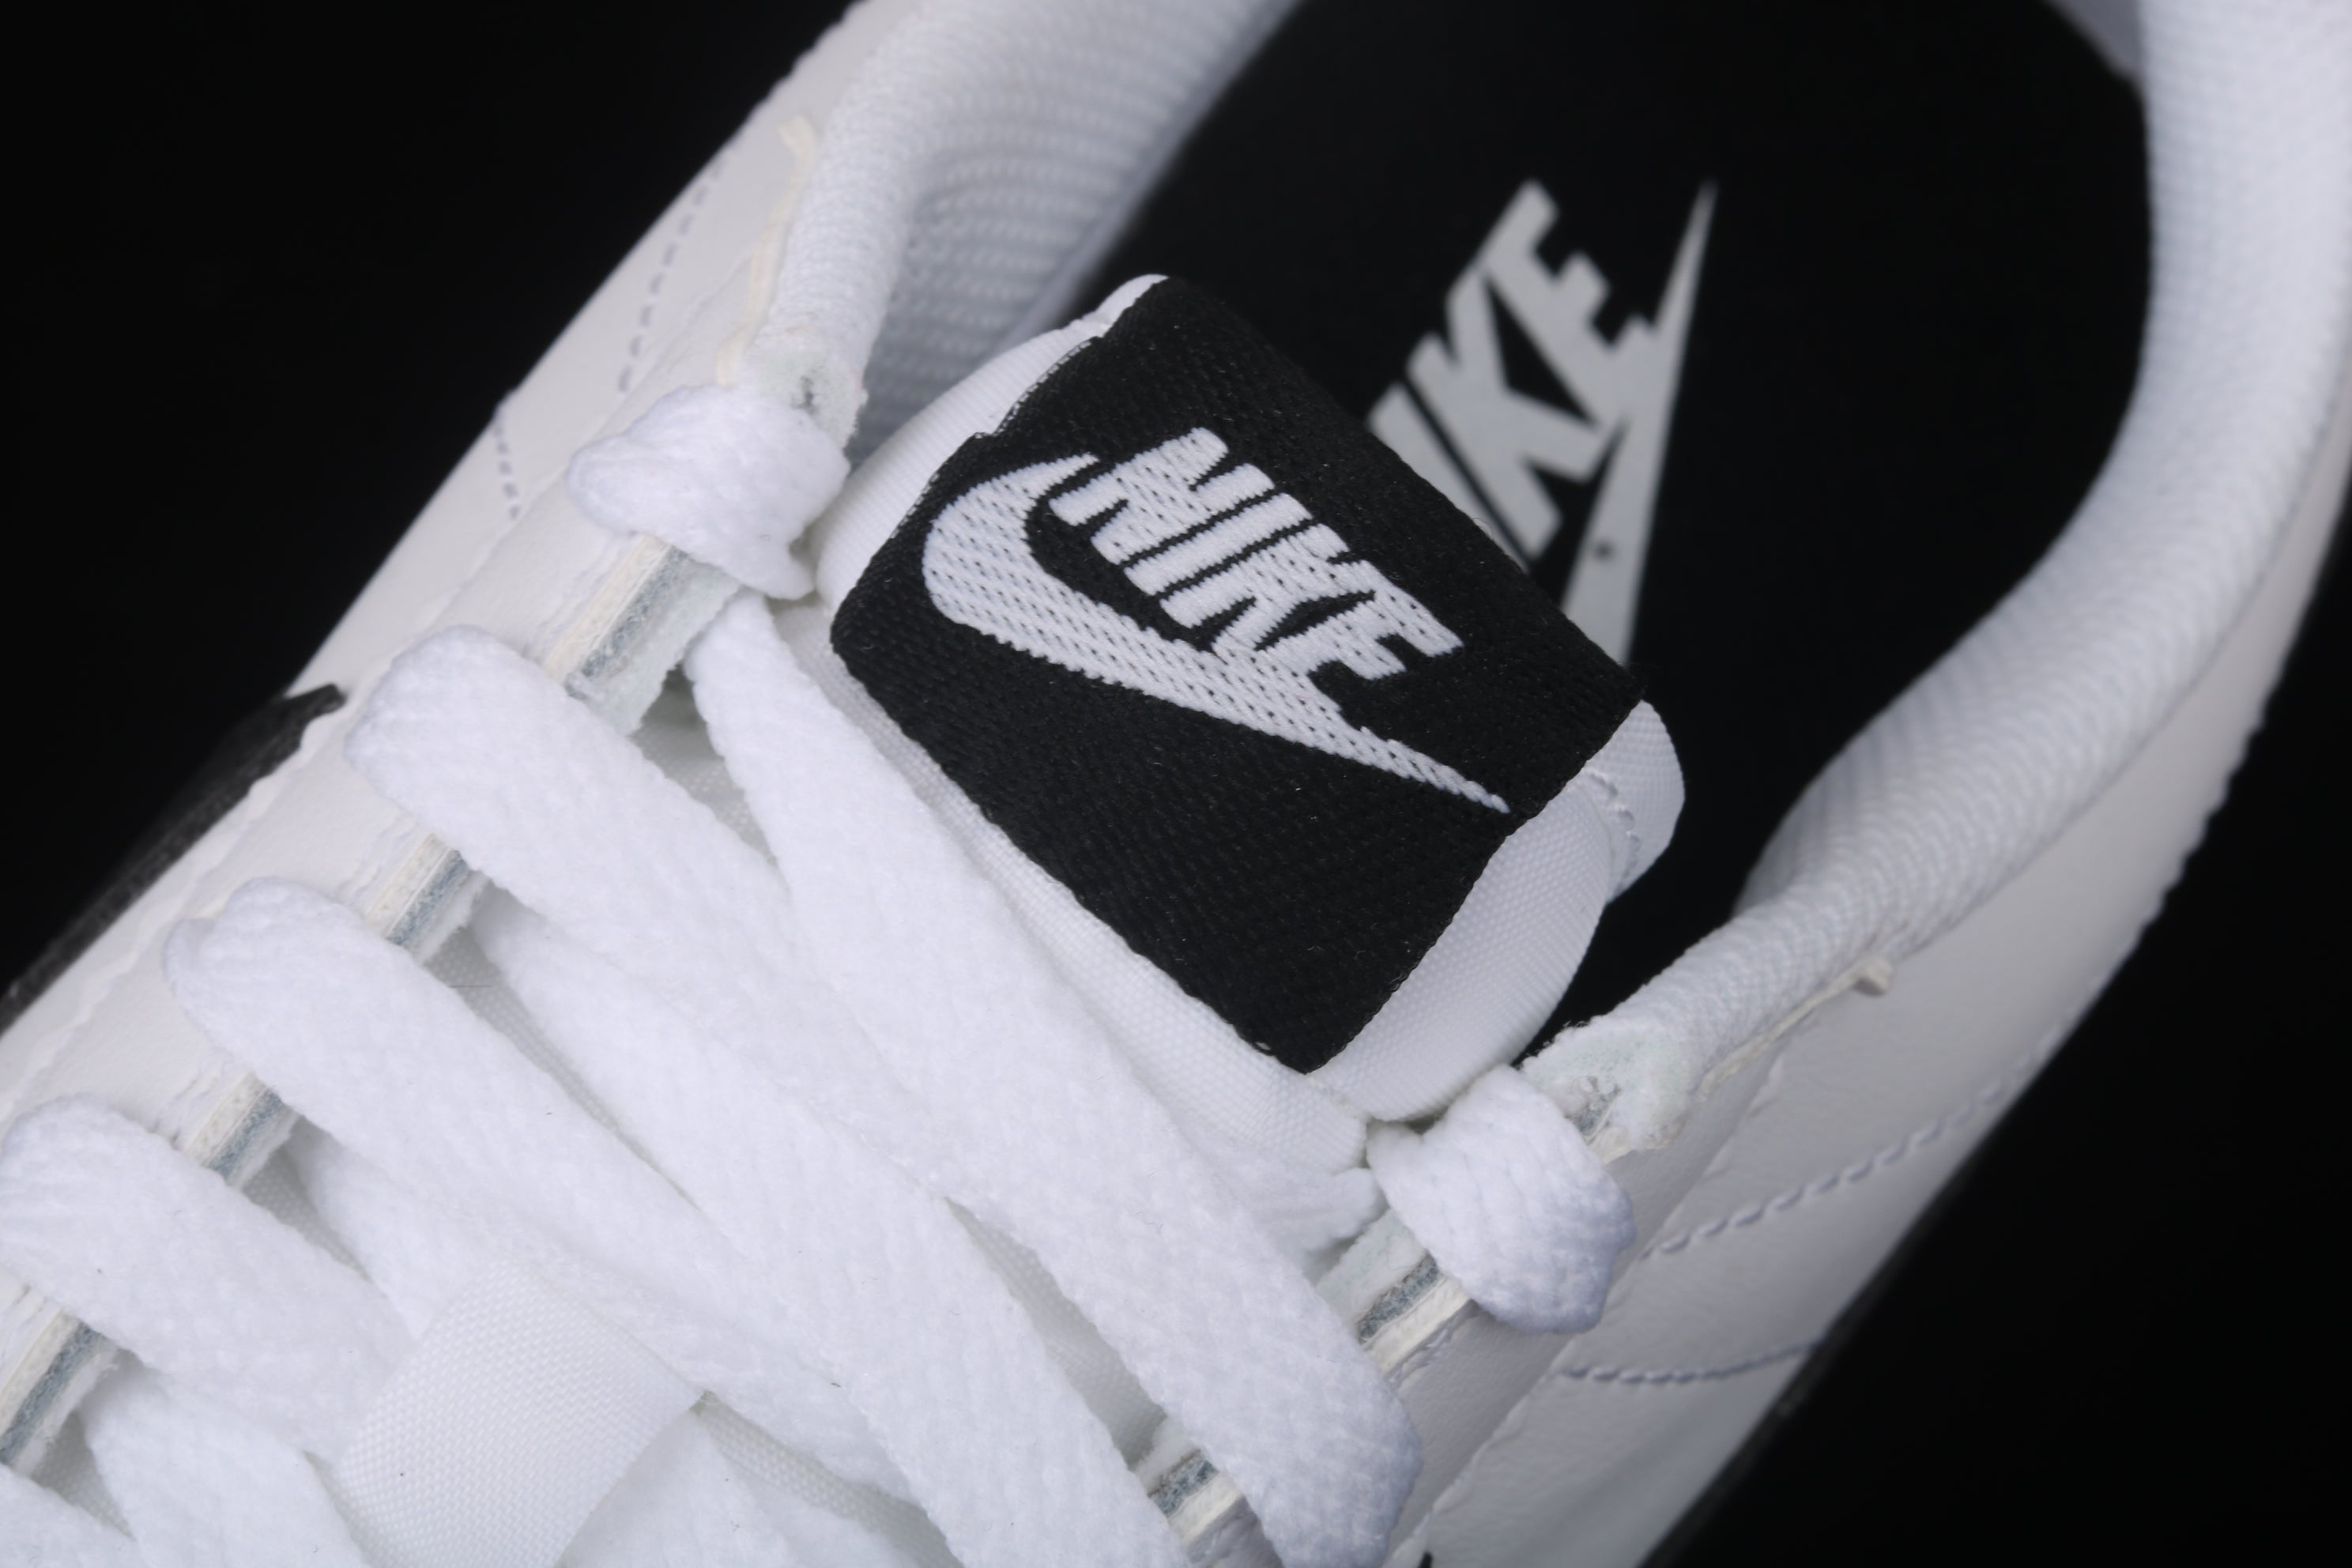 NikeMens Classic Cortez - White/Black